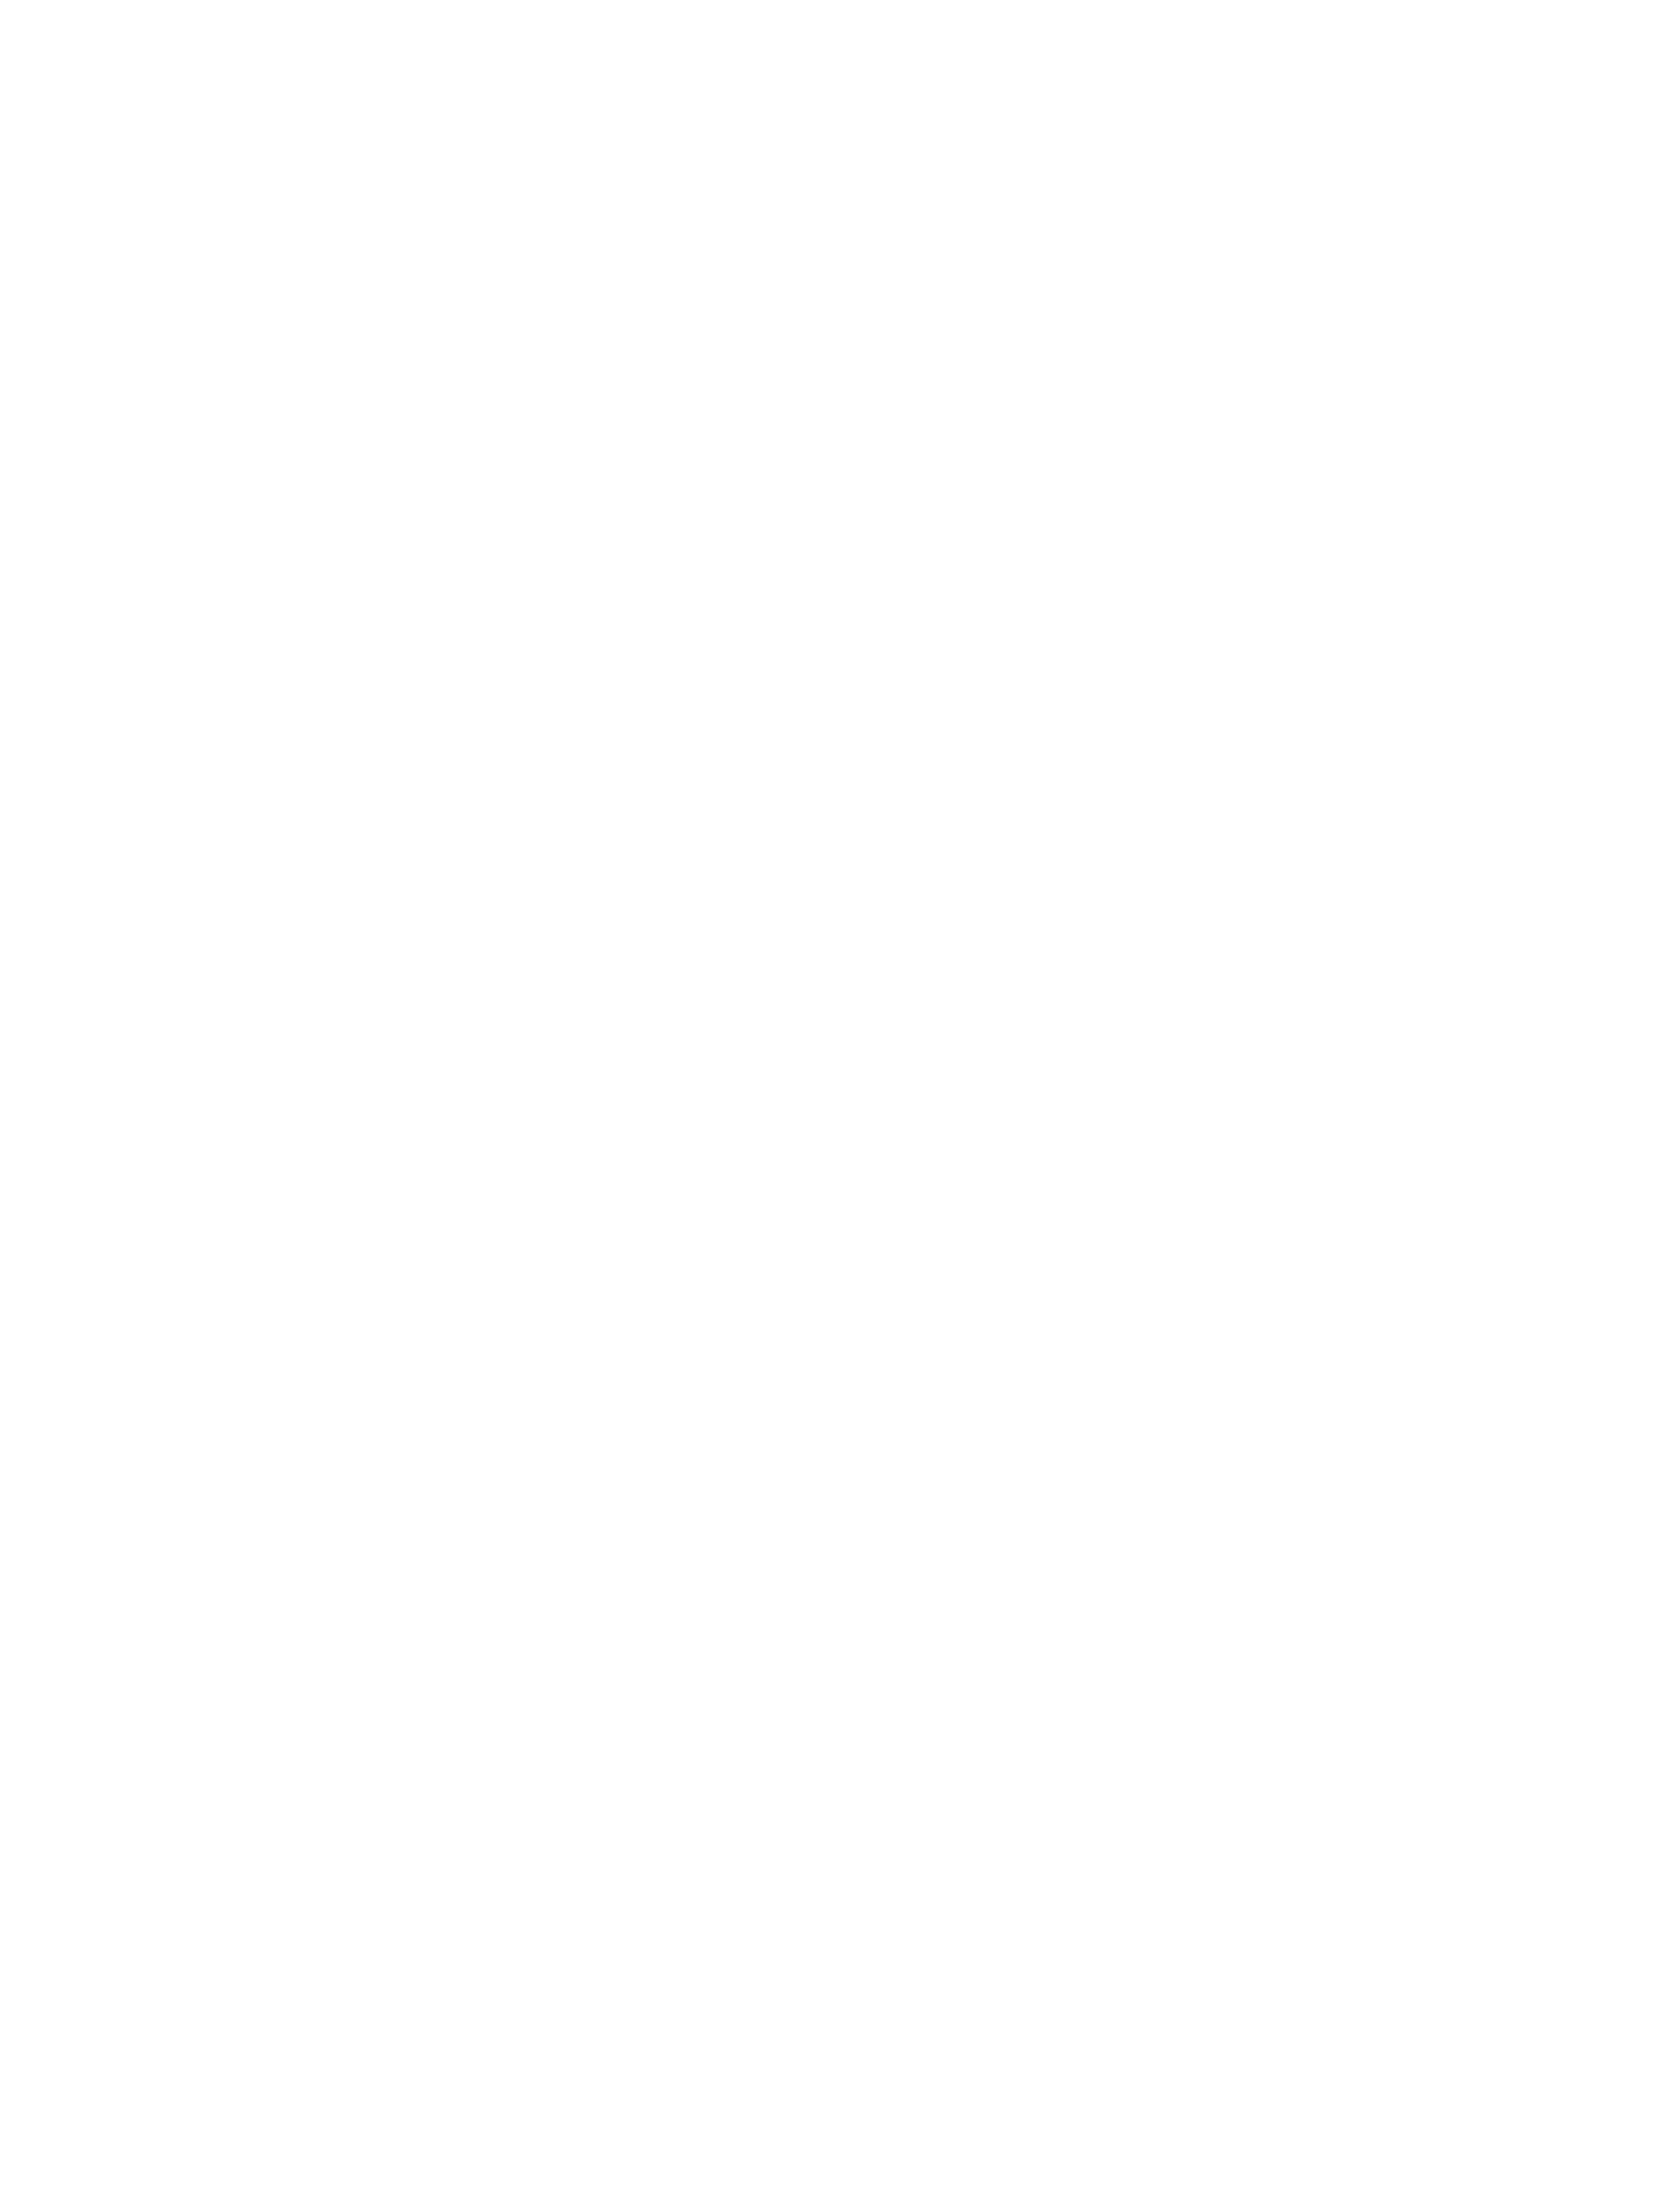 Вильгельм Генрих Шлезингер. Серия картин «Пять чувств», 1865 год. Слух